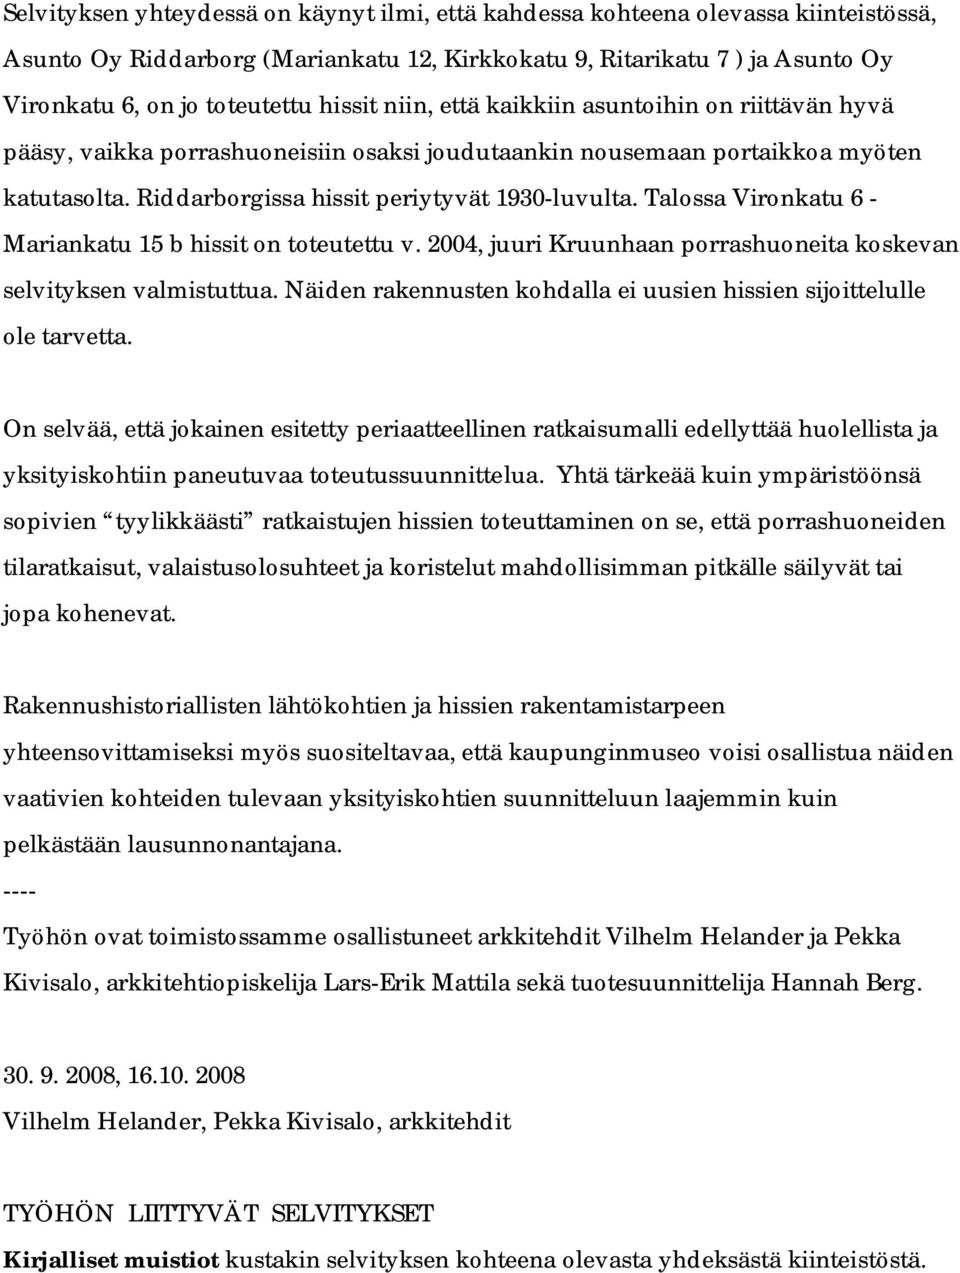 Talossa Vironkatu 6 - Mariankatu 15 b hissit on toteutettu v. 2004, juuri Kruunhaan porrashuoneita koskevan selvityksen valmistuttua.